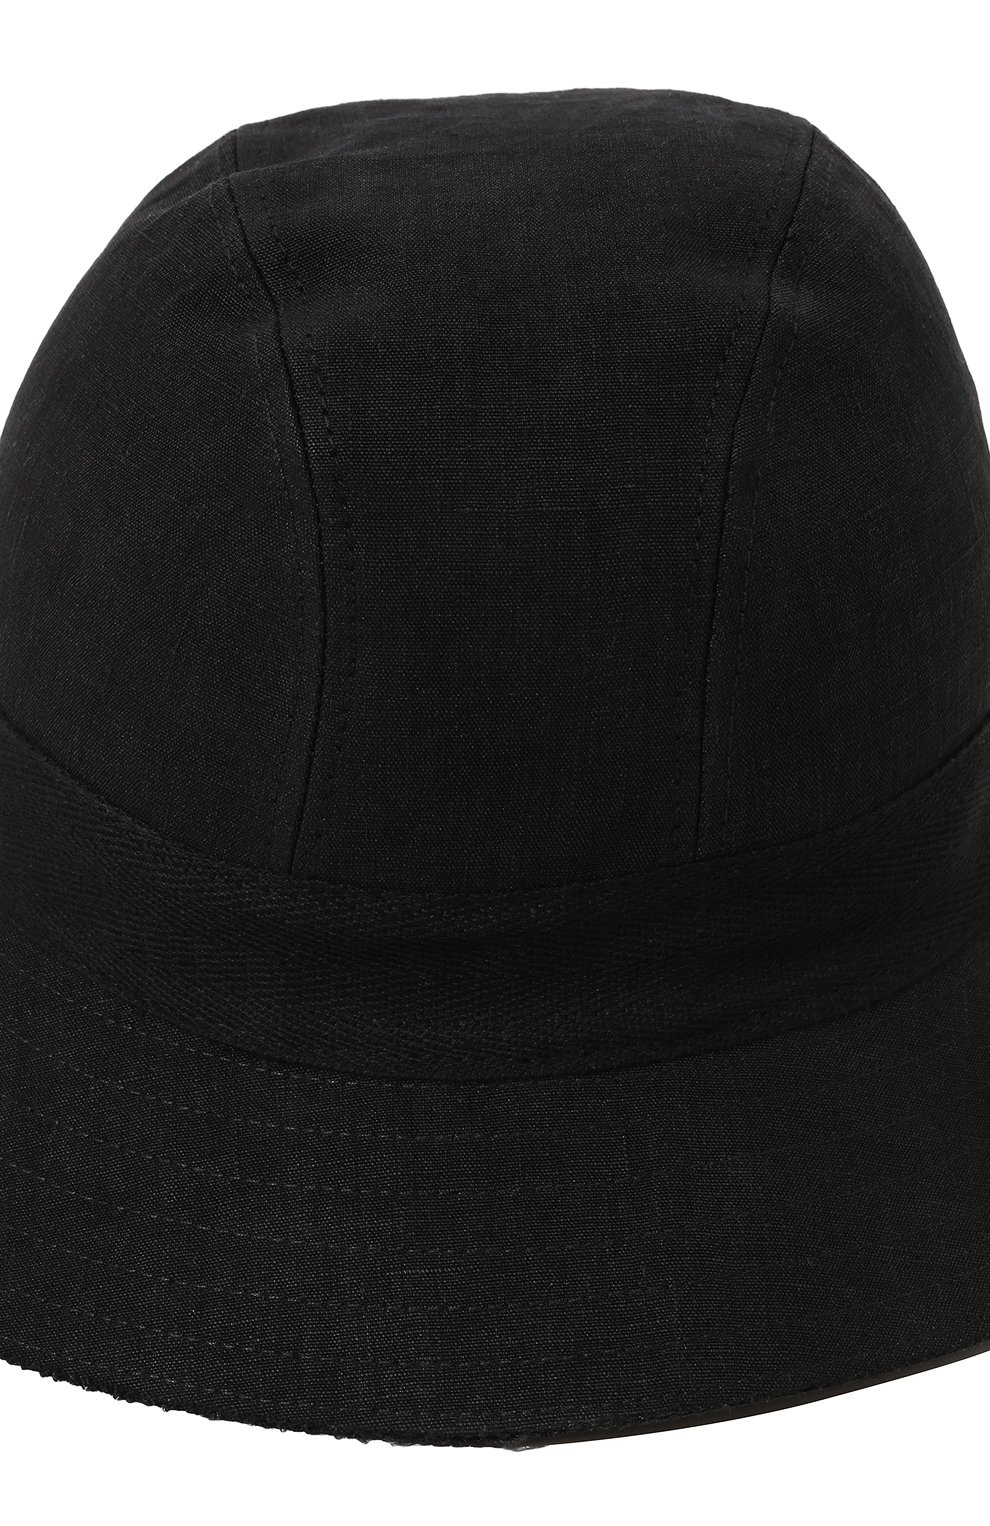 Женская льняная панама ISABEL BENENATO черного цвета, арт. DA11S22 | Фото 4 (Материал: Текстиль, Лен)